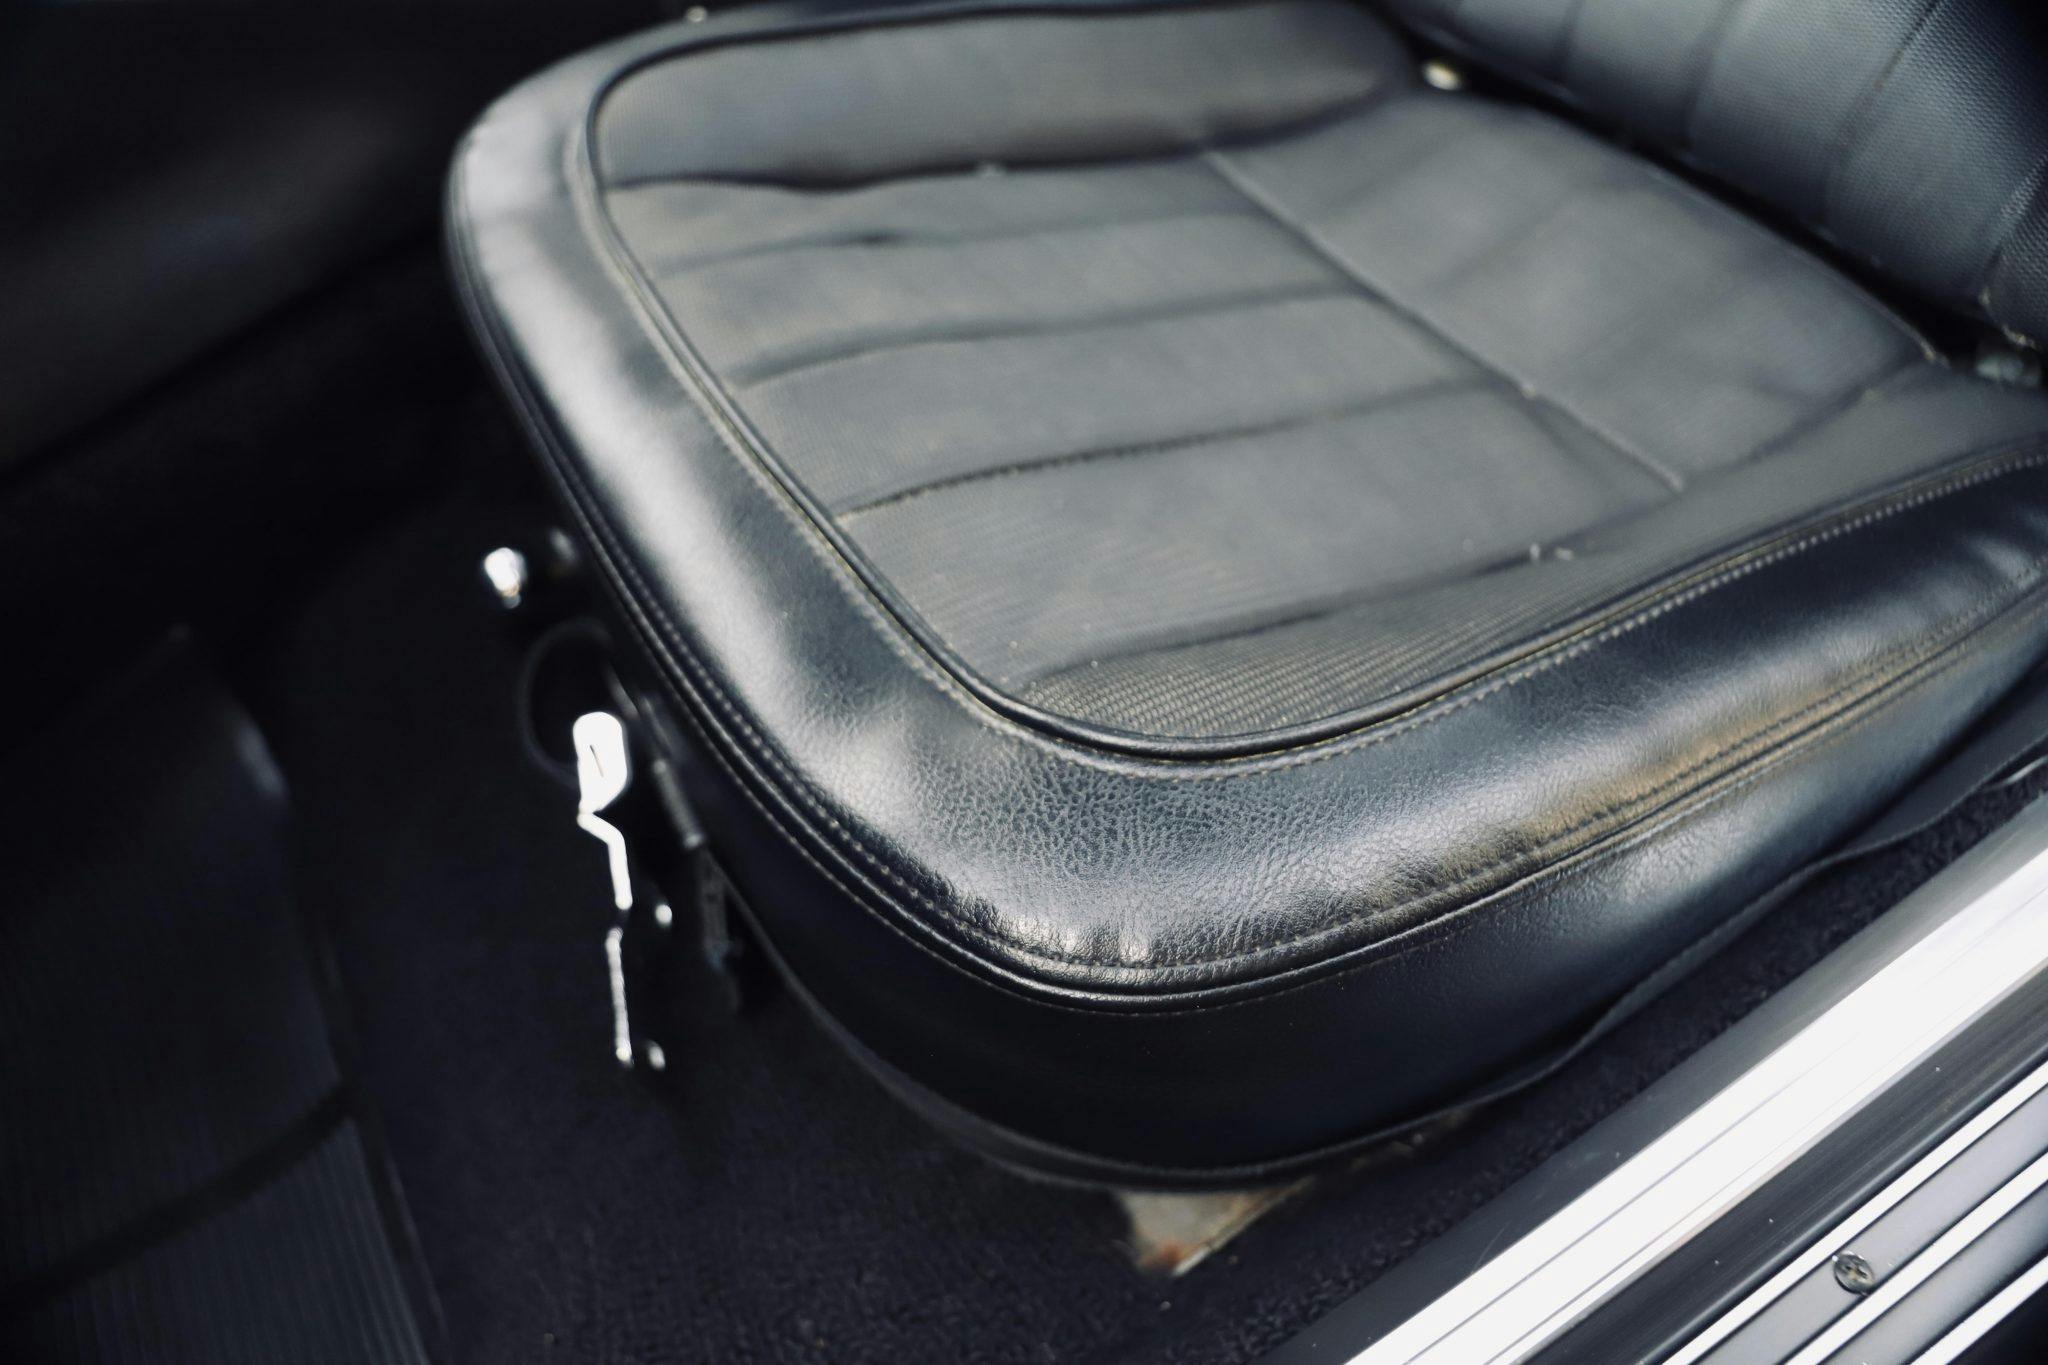 1969 Chevrolet Corvette L88 coupe Tuxedo Black interior driver seat